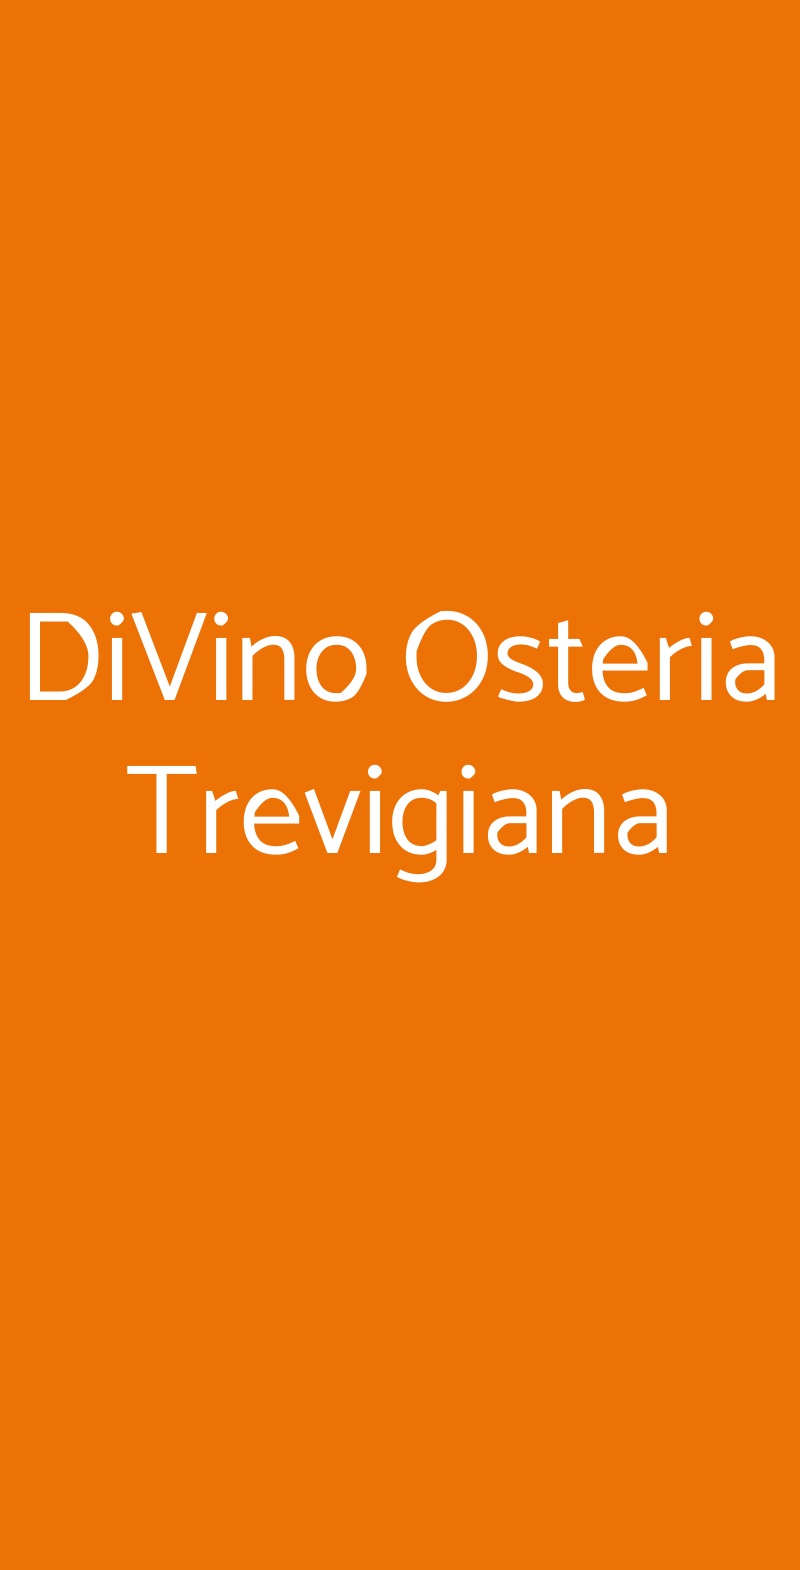 DiVino Osteria Trevigiana Quinto di Treviso menù 1 pagina